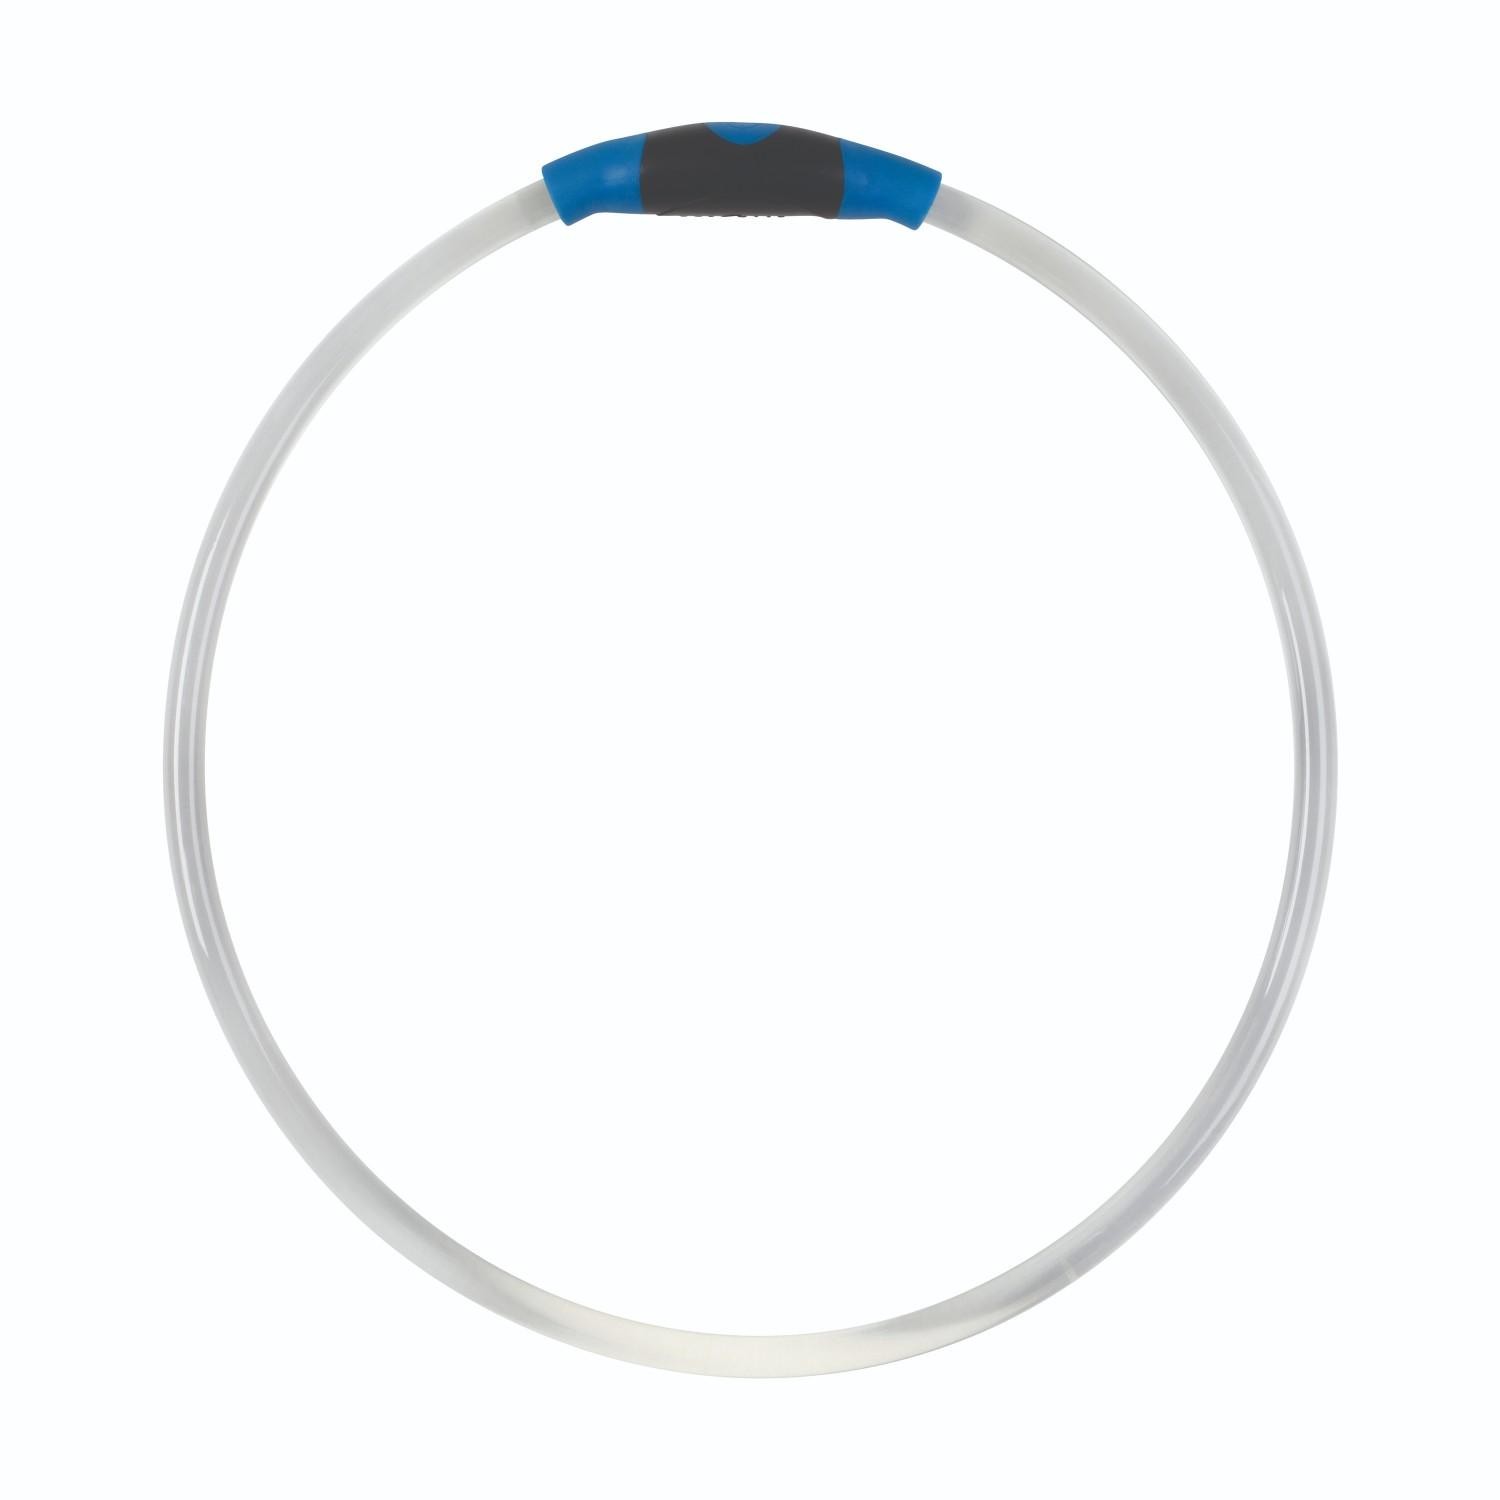 Nite Ize Nitehowl LED Safety Necklace - Blue